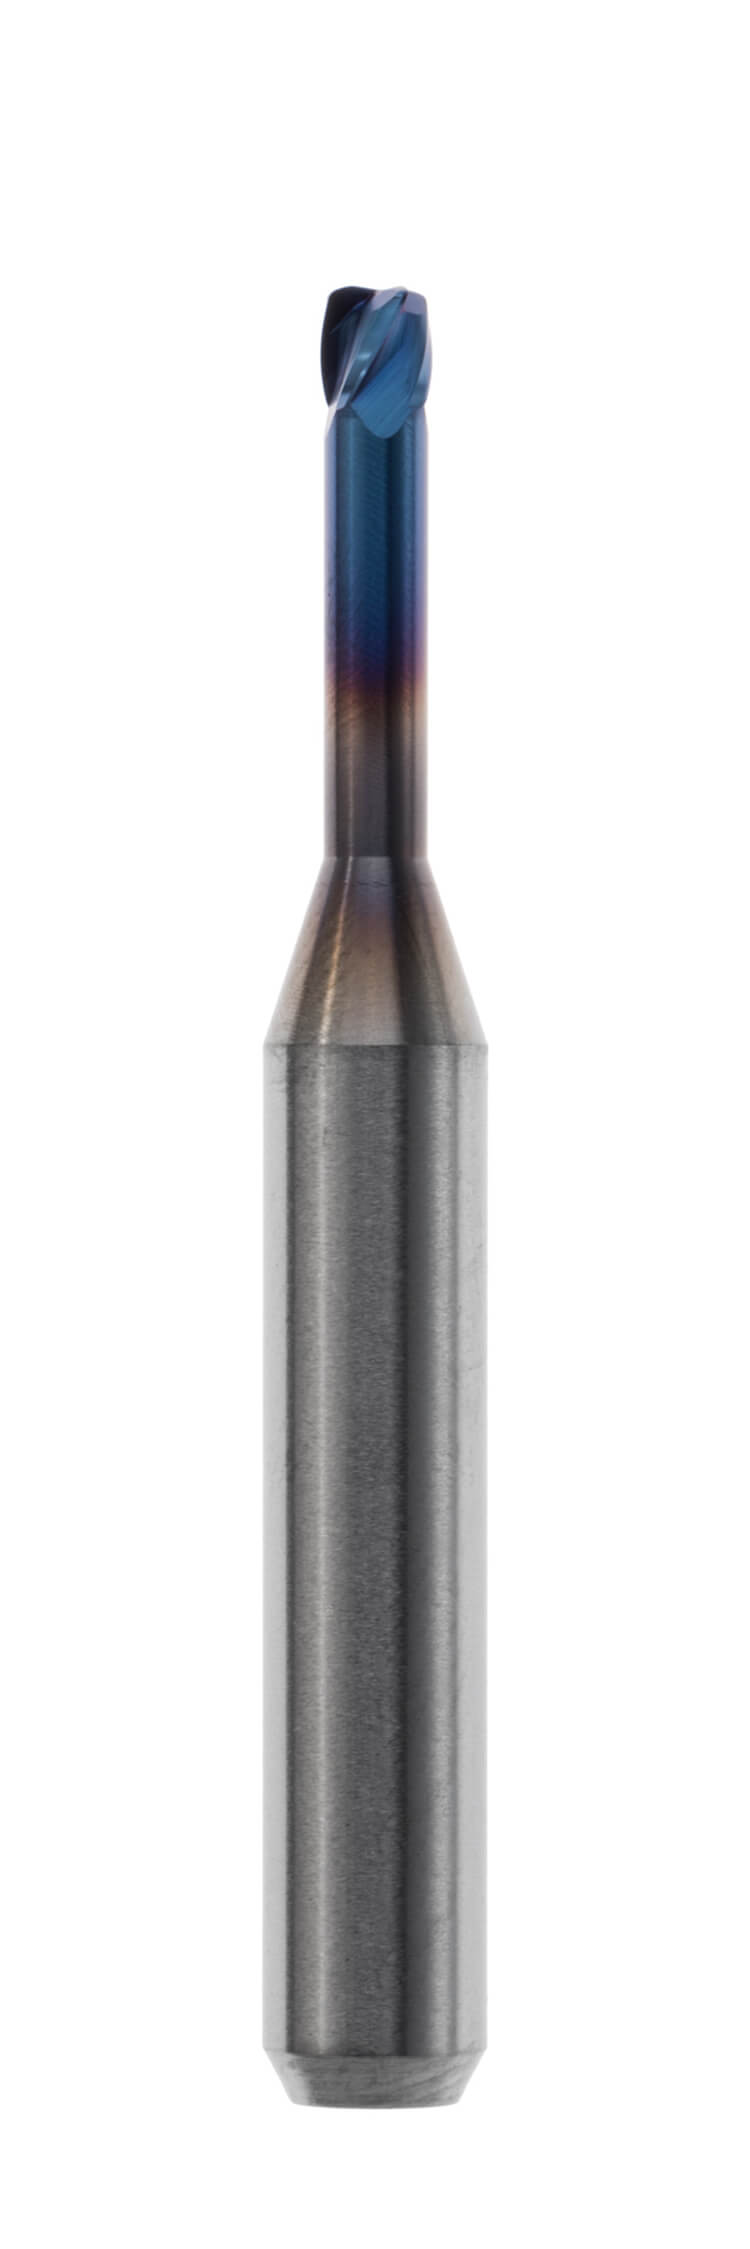 Offene Maschinensysteme 6,0 mm Schaft, Länge 48,0 mm Torusfräser, zylindrisch